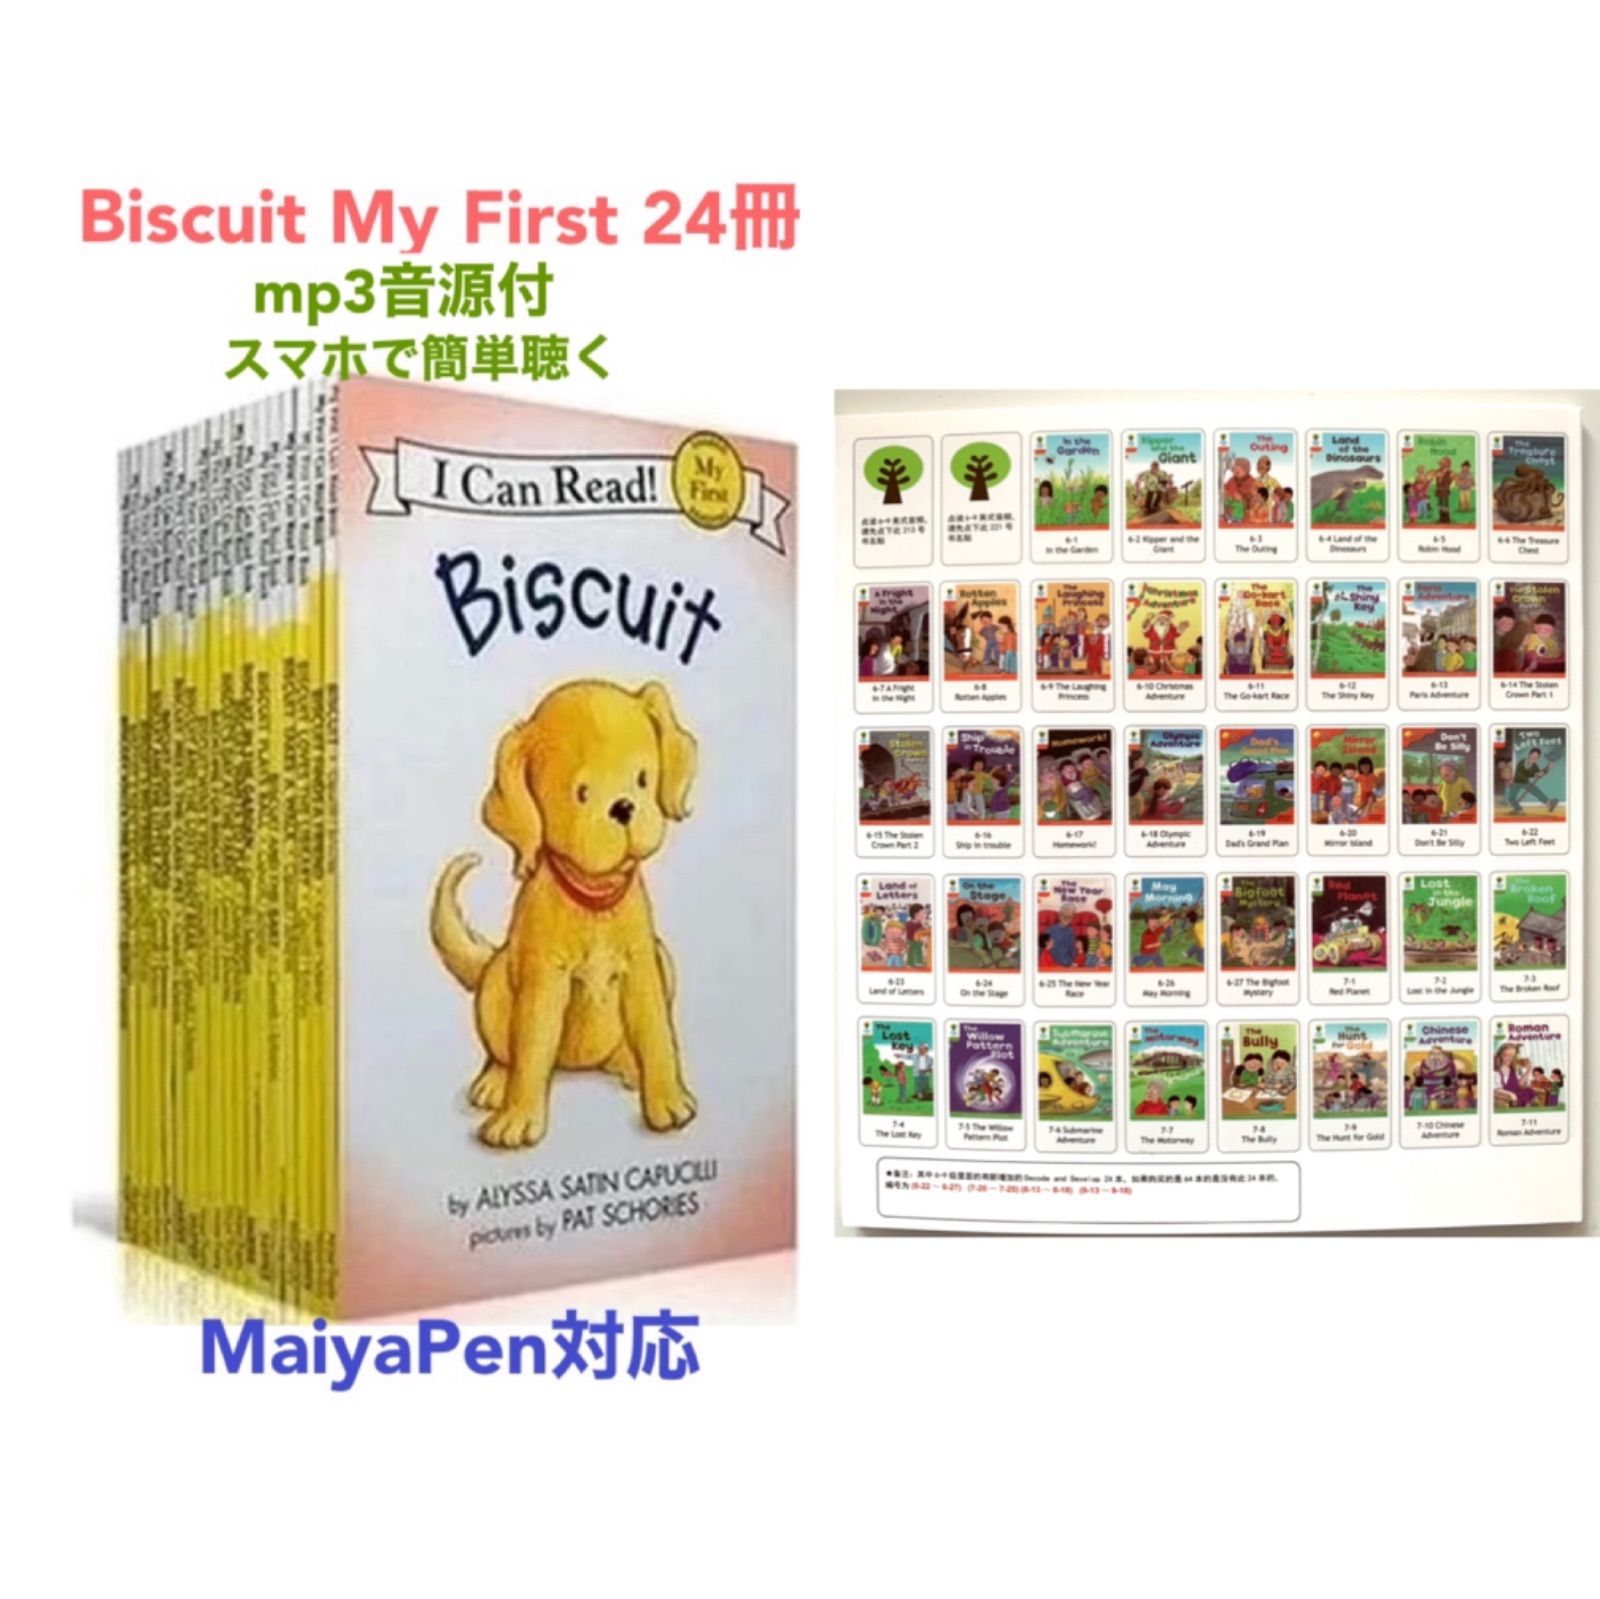 即納-96時間限定 Biscuit My First 絵本24冊 全冊音源 マイヤペン対応 新品